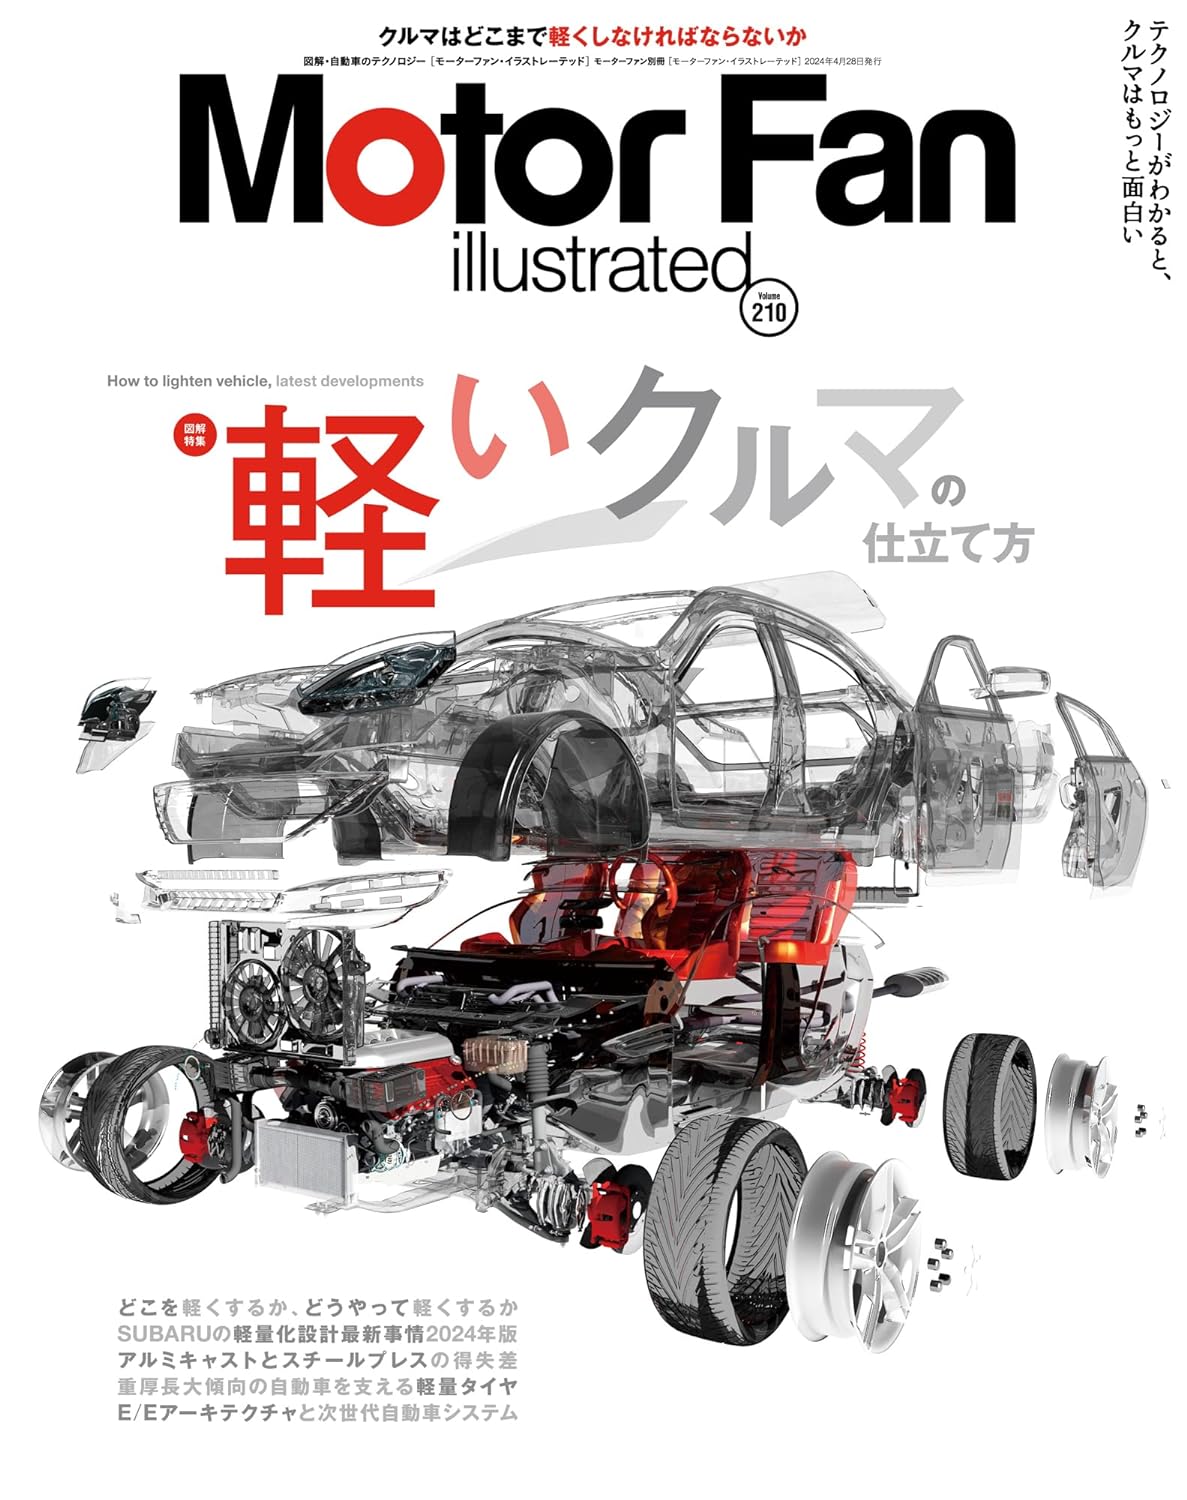 MOTOR FAN illustrated - モ-タ-ファンイラストレ-テッド - Vol.210 (モ-タ-ファン別冊)